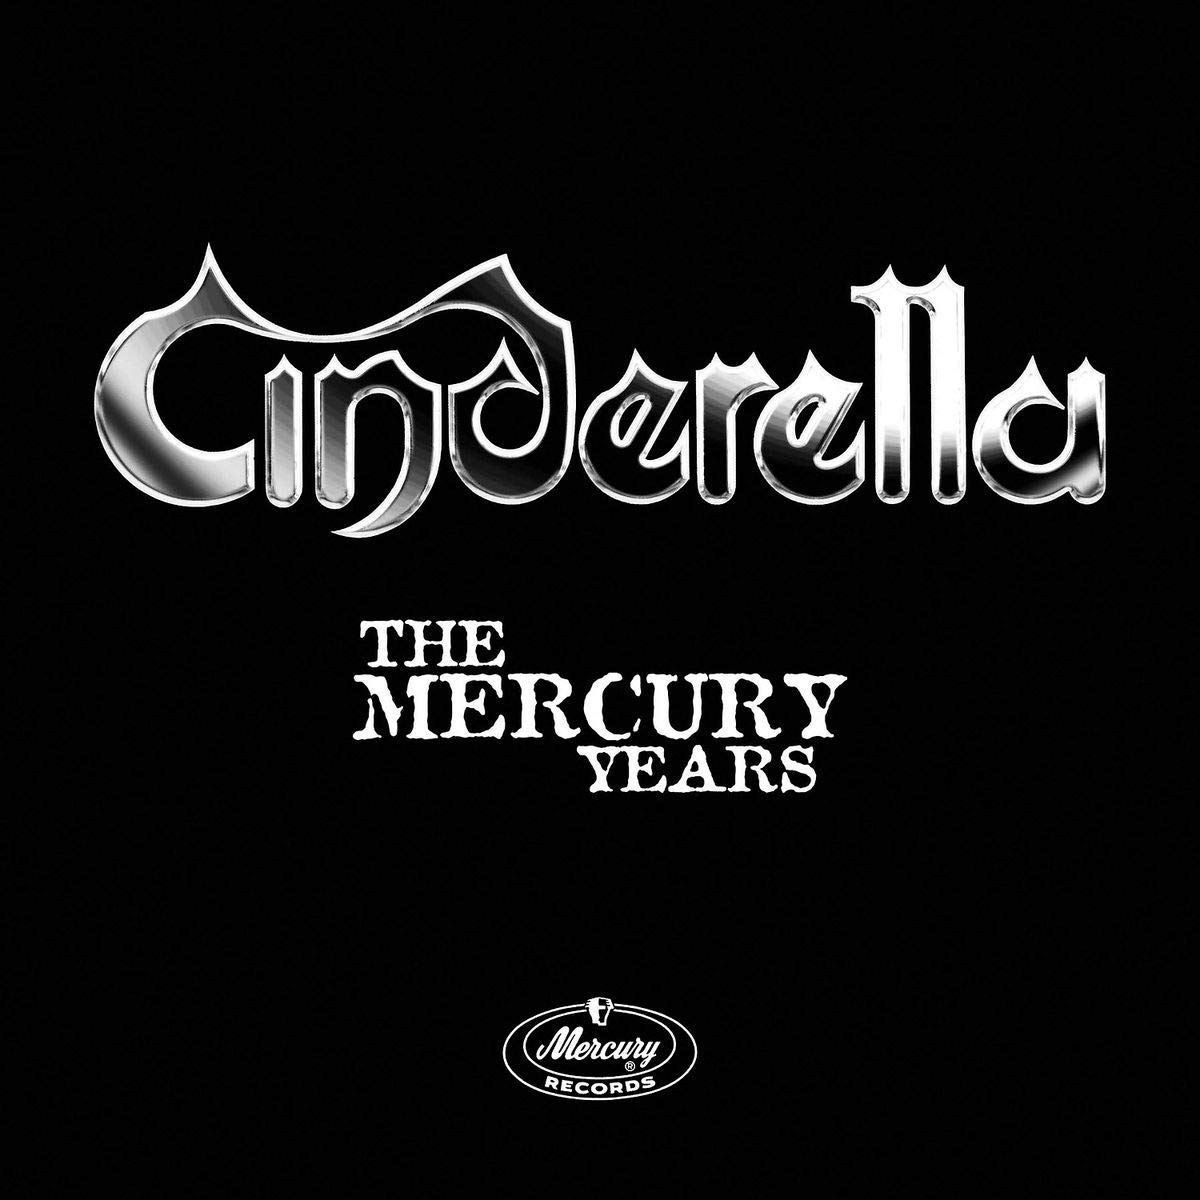 Audio Cd Cinderella - The Mercury Years Box Set (5 Cd) NUOVO SIGILLATO, EDIZIONE DEL 01/10/2018 SUBITO DISPONIBILE